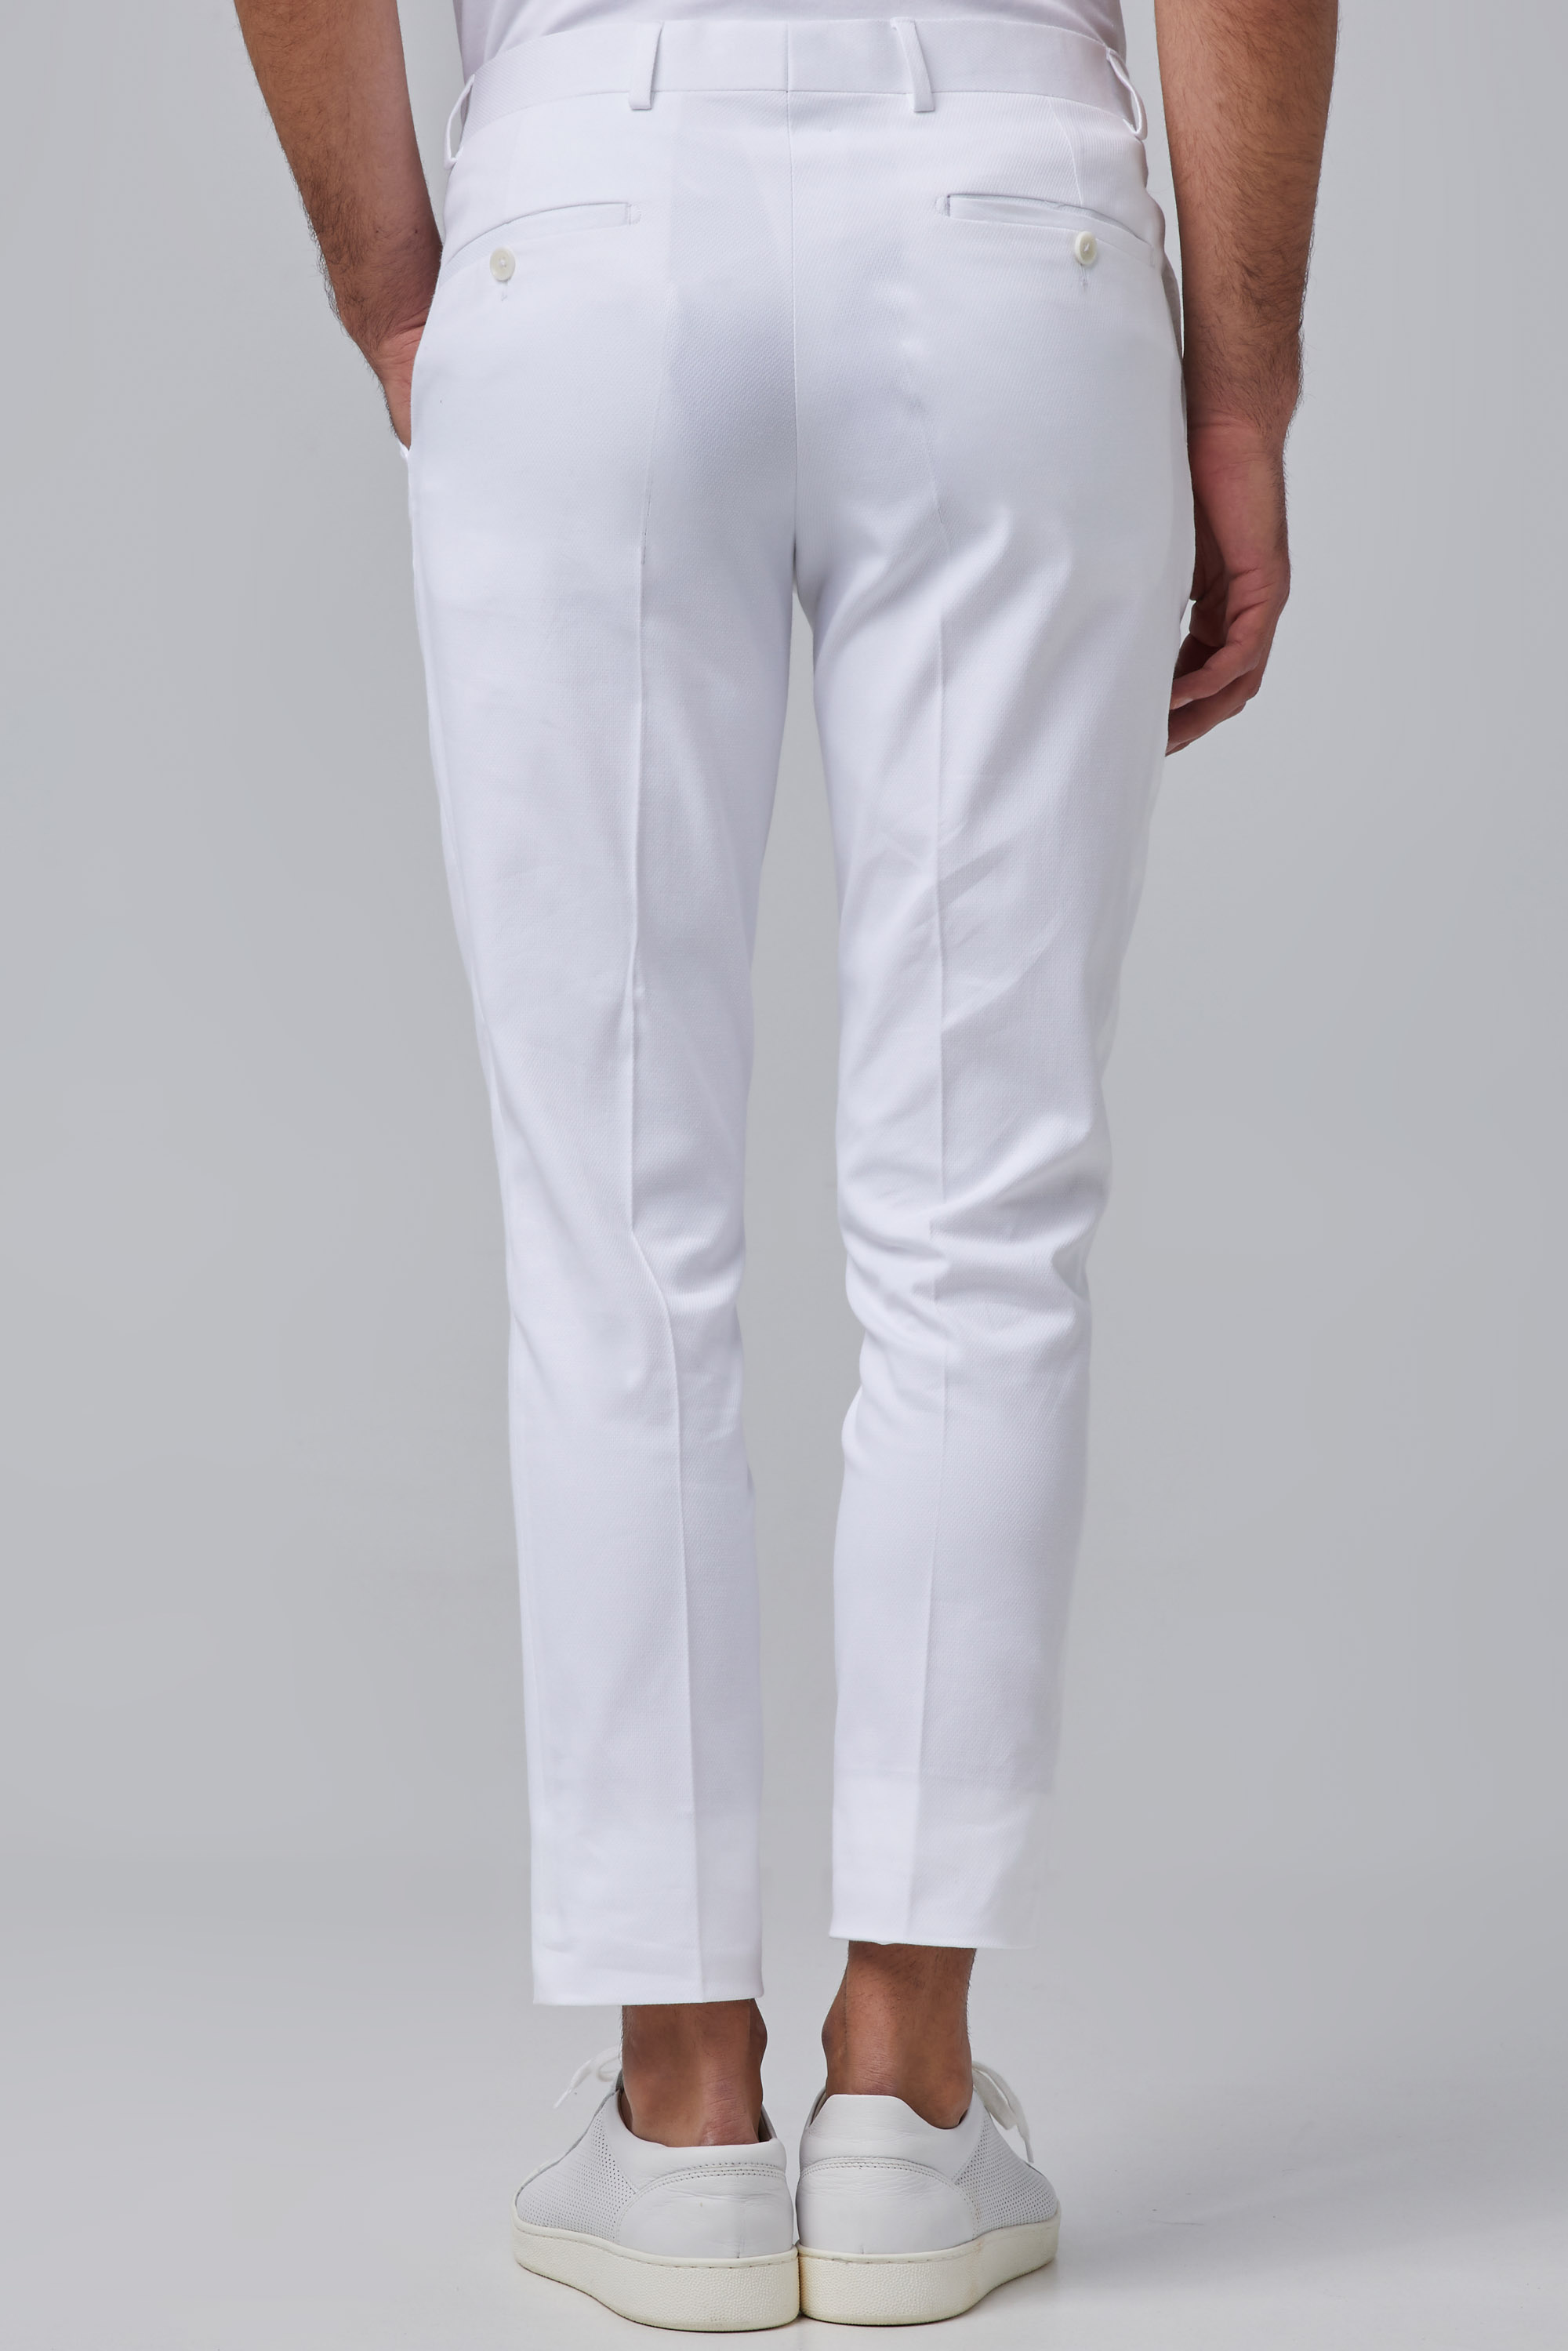 Classic White Textured Cotton Trousers In Slim Fit | Aristoteli Bitsiani